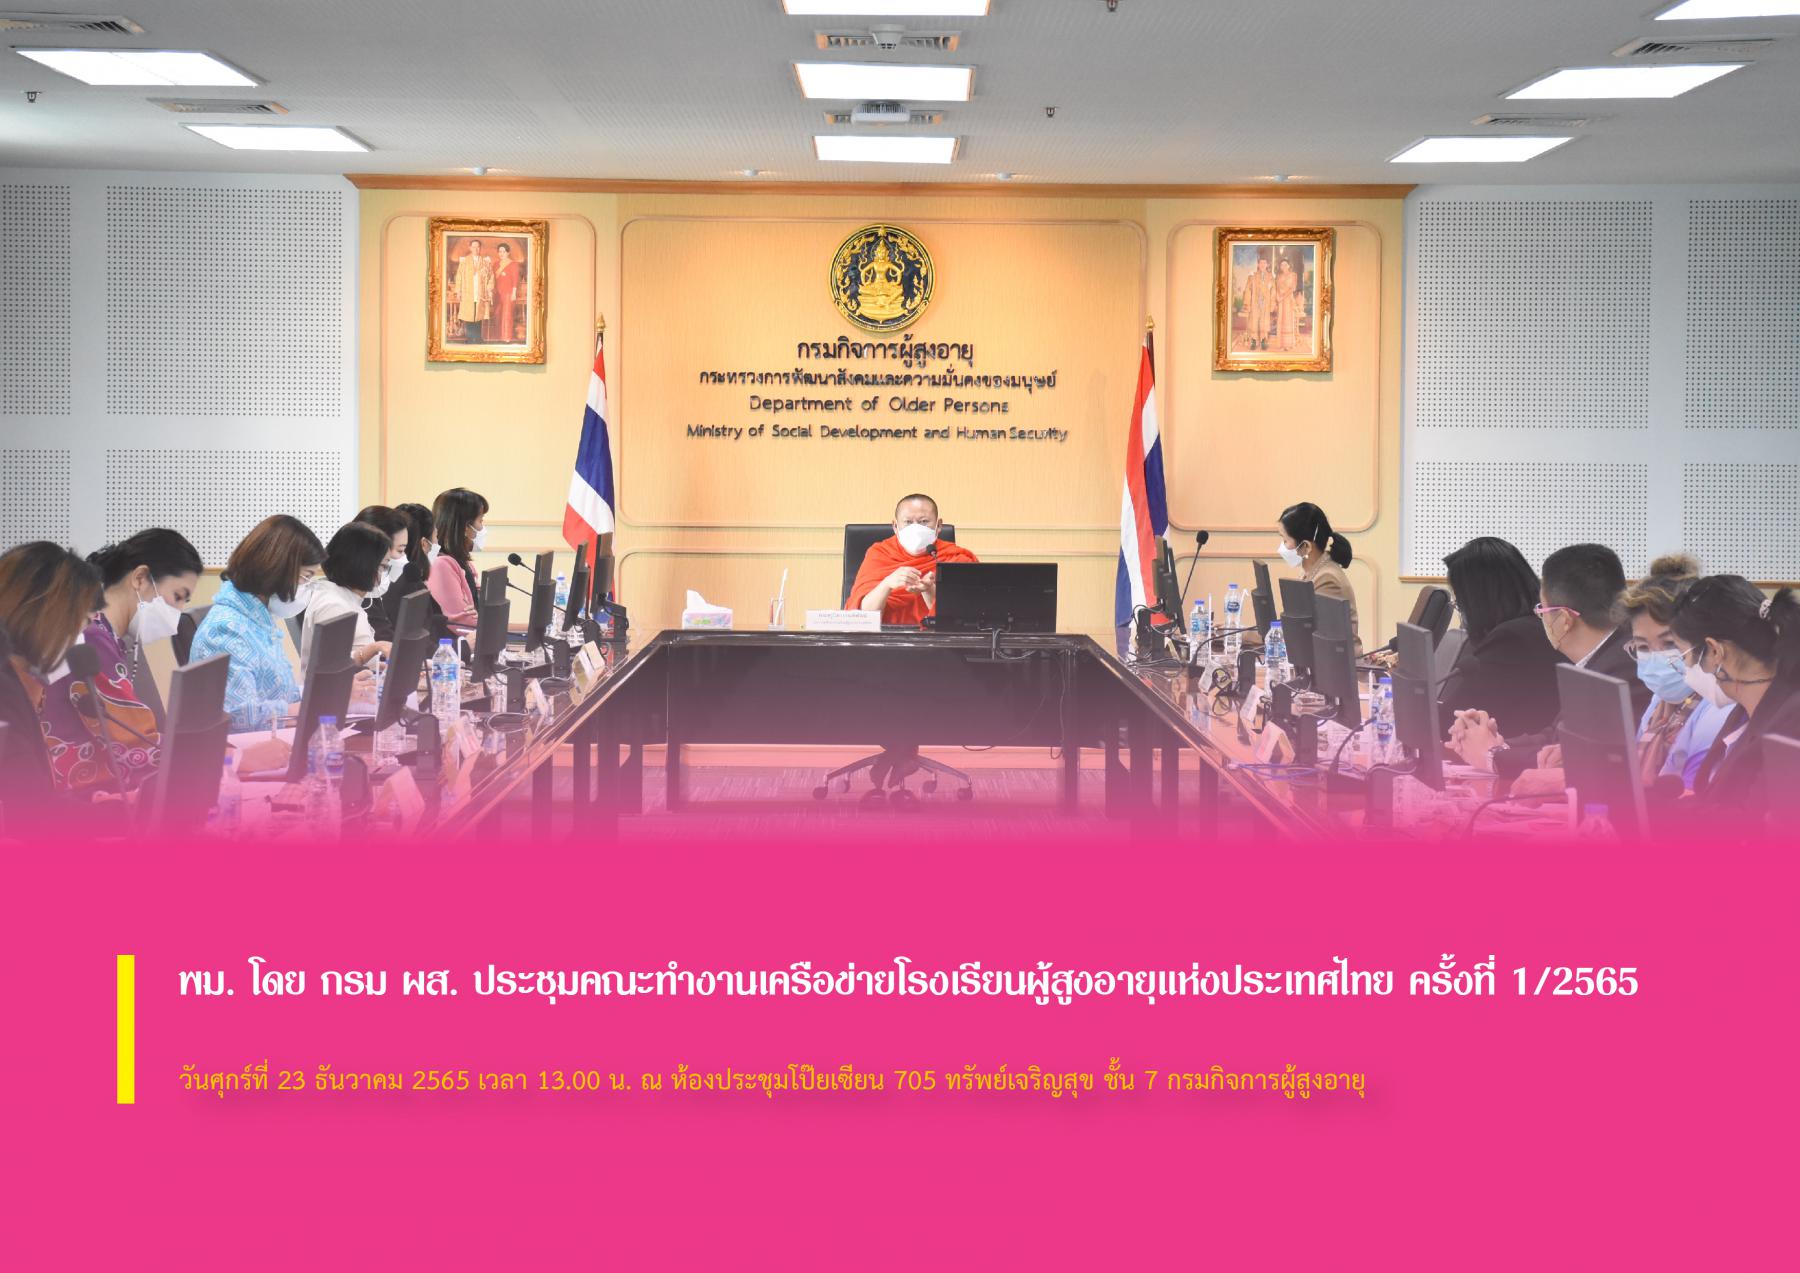 พม. โดย กรม ผส. ประชุมคณะทำงานเครือข่ายโรงเรียนผู้สูงอายุแห่งประเทศไทย ครั้งที่ 1/2565